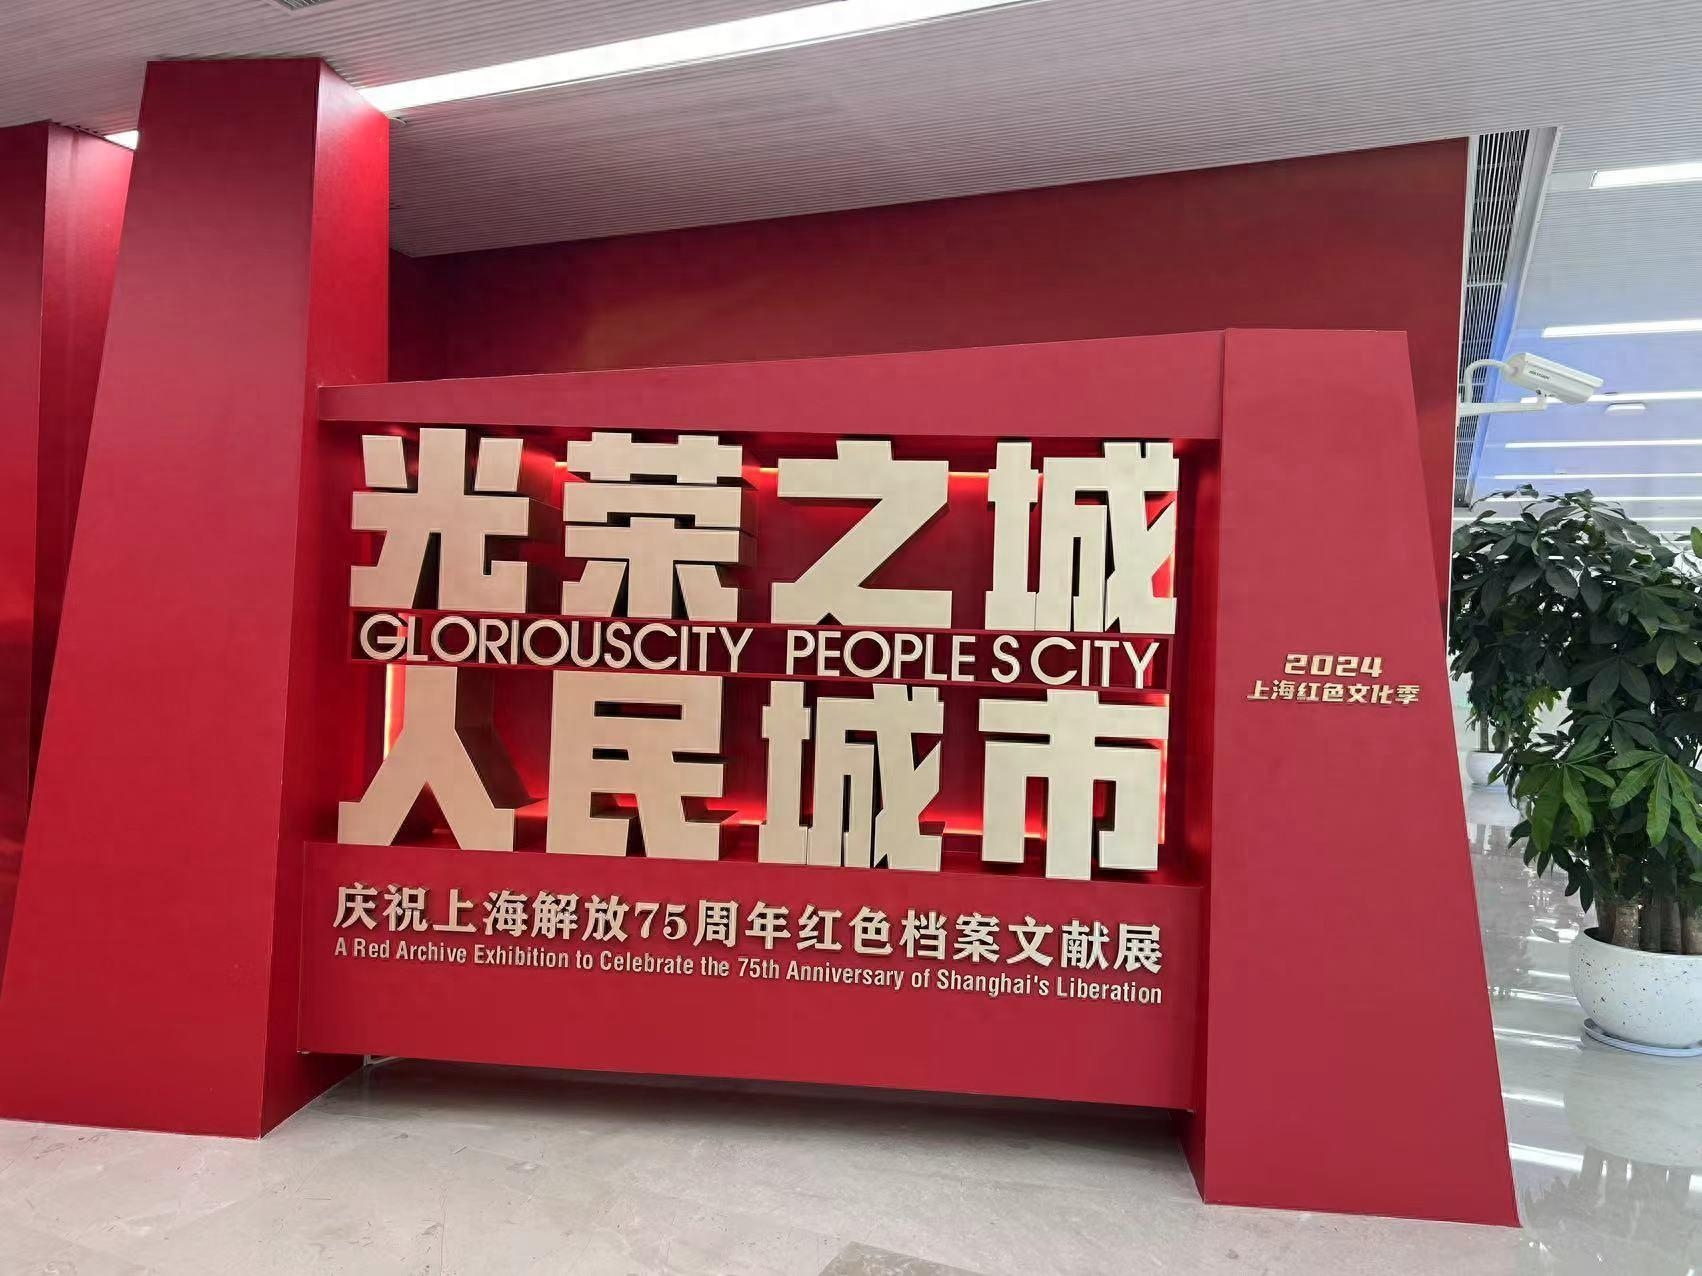 光荣之城人民城市——庆祝上海解放75周年红色档案文献展